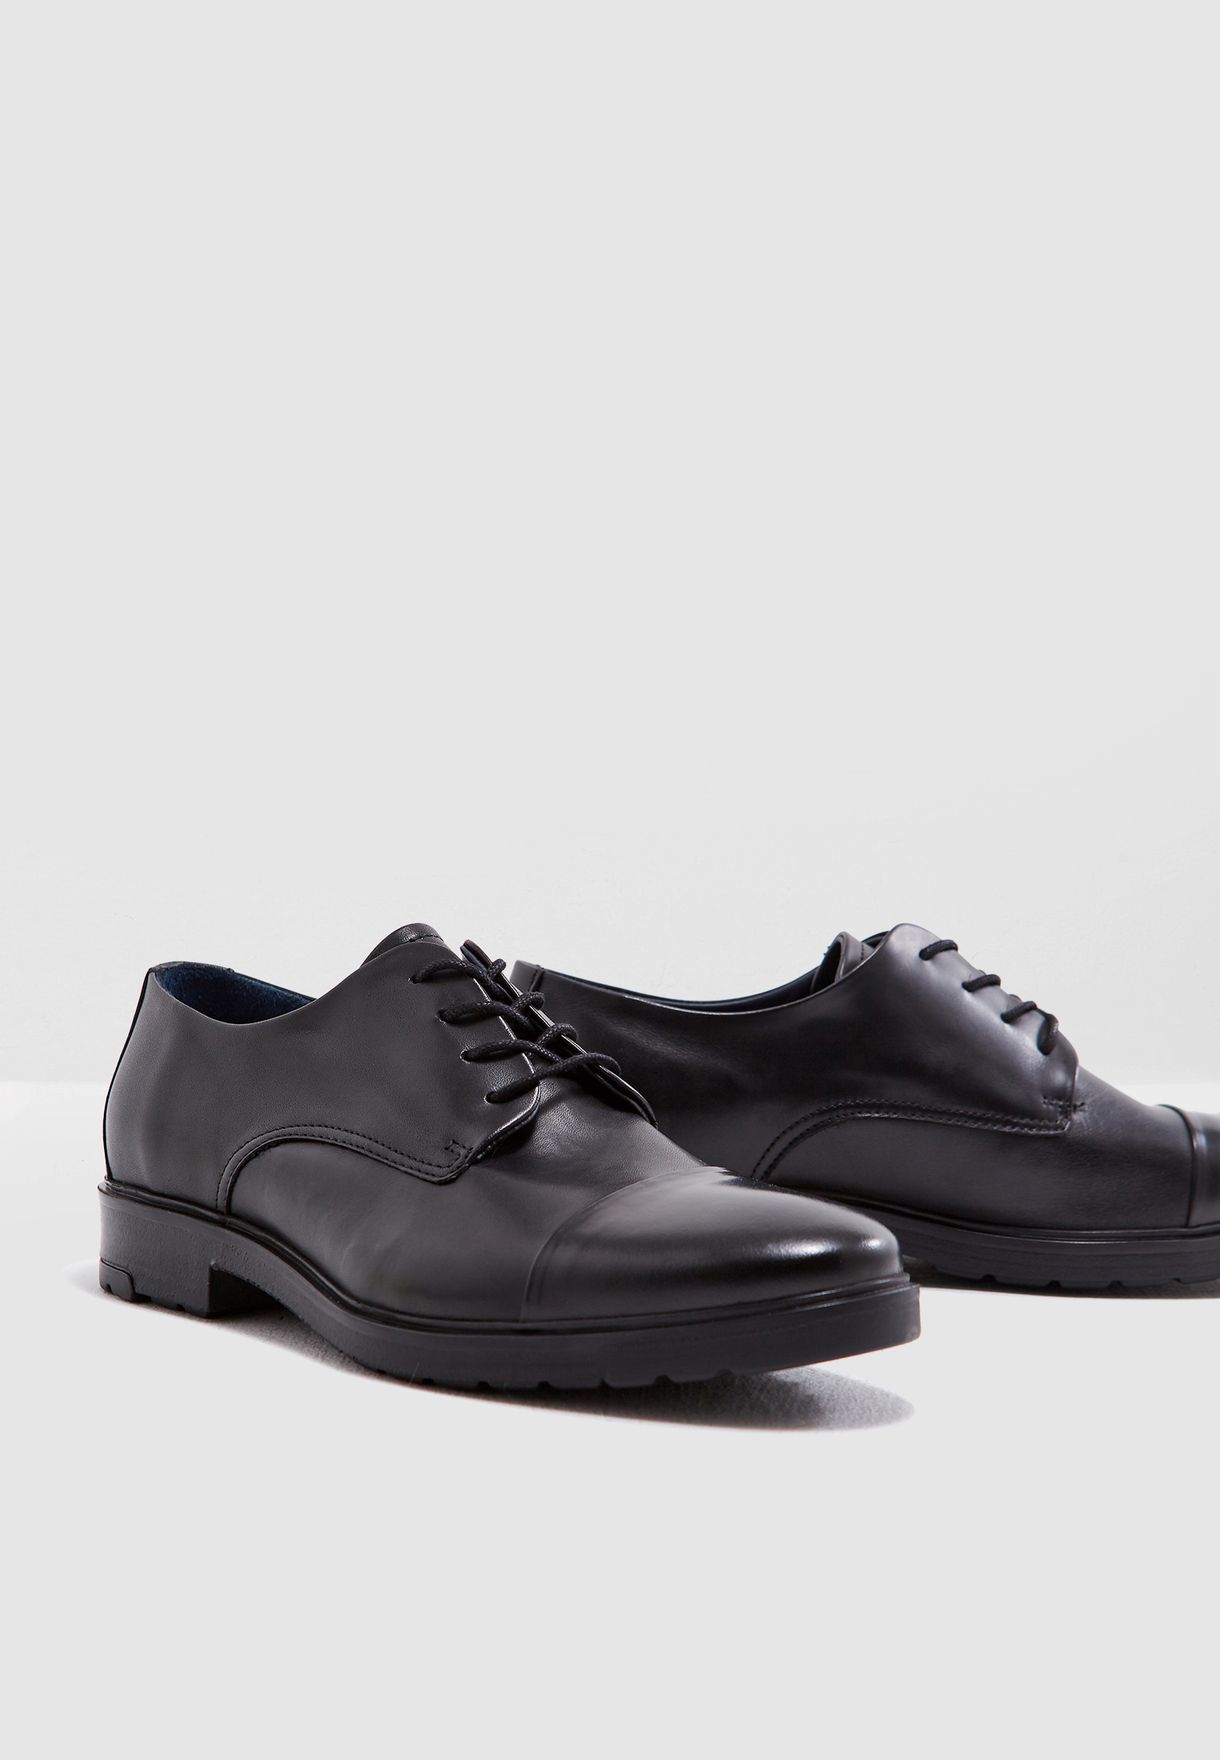 tommy hilfiger shoes formal